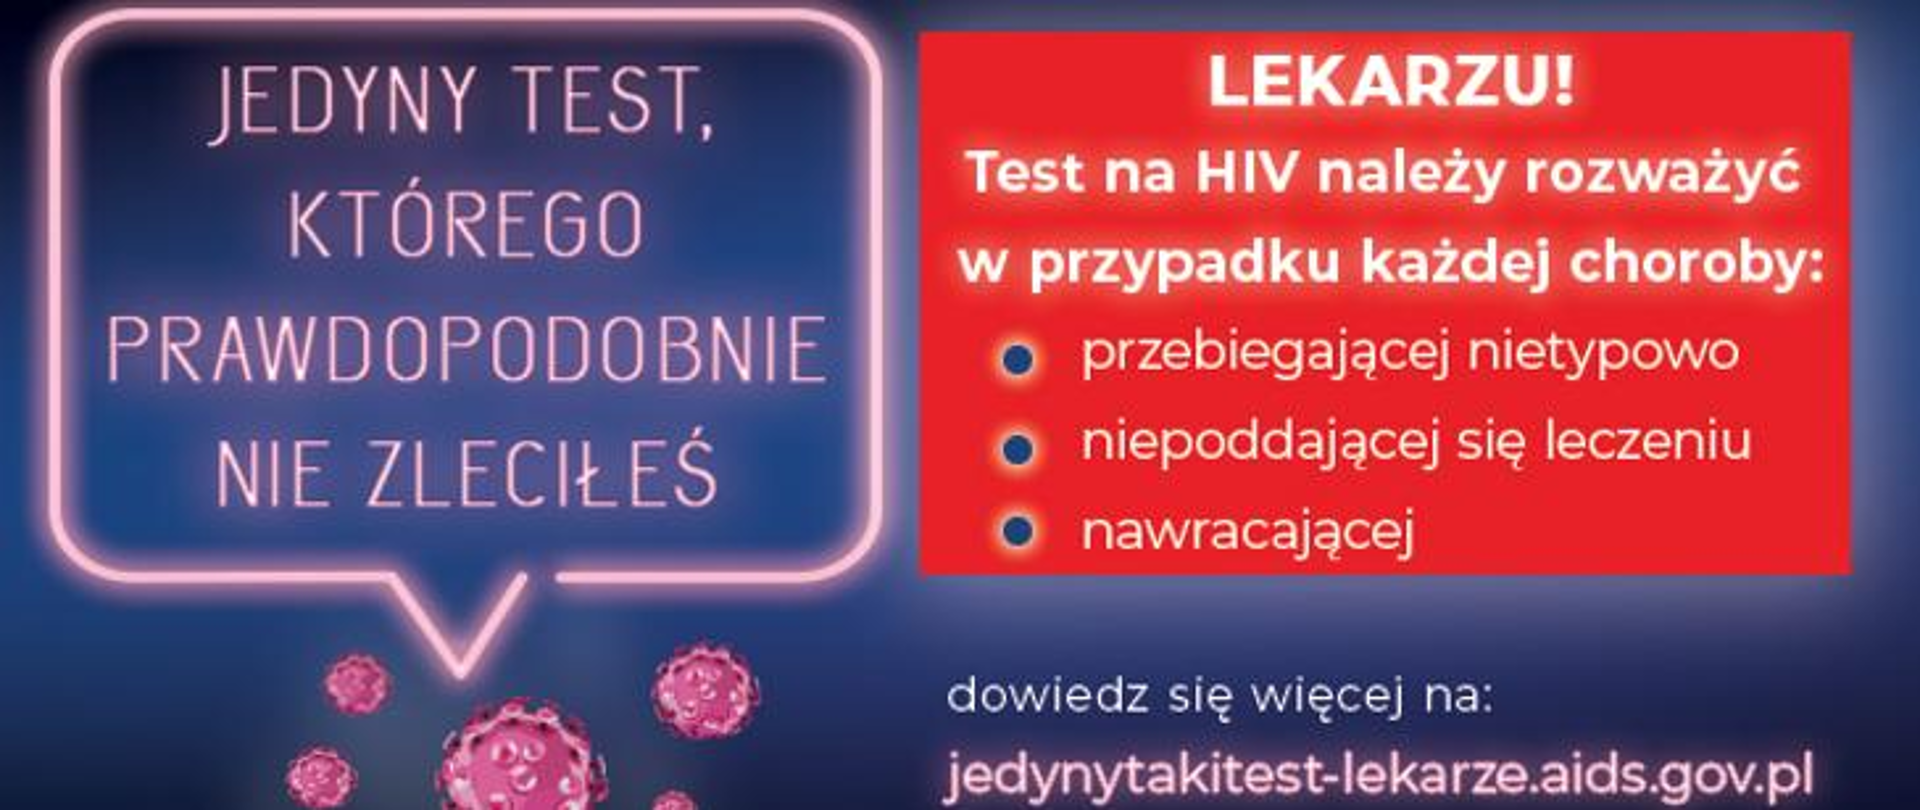 Kampania testów na HIV - Jedyny TEST którego prawdopodobnie nie zleciłeś.